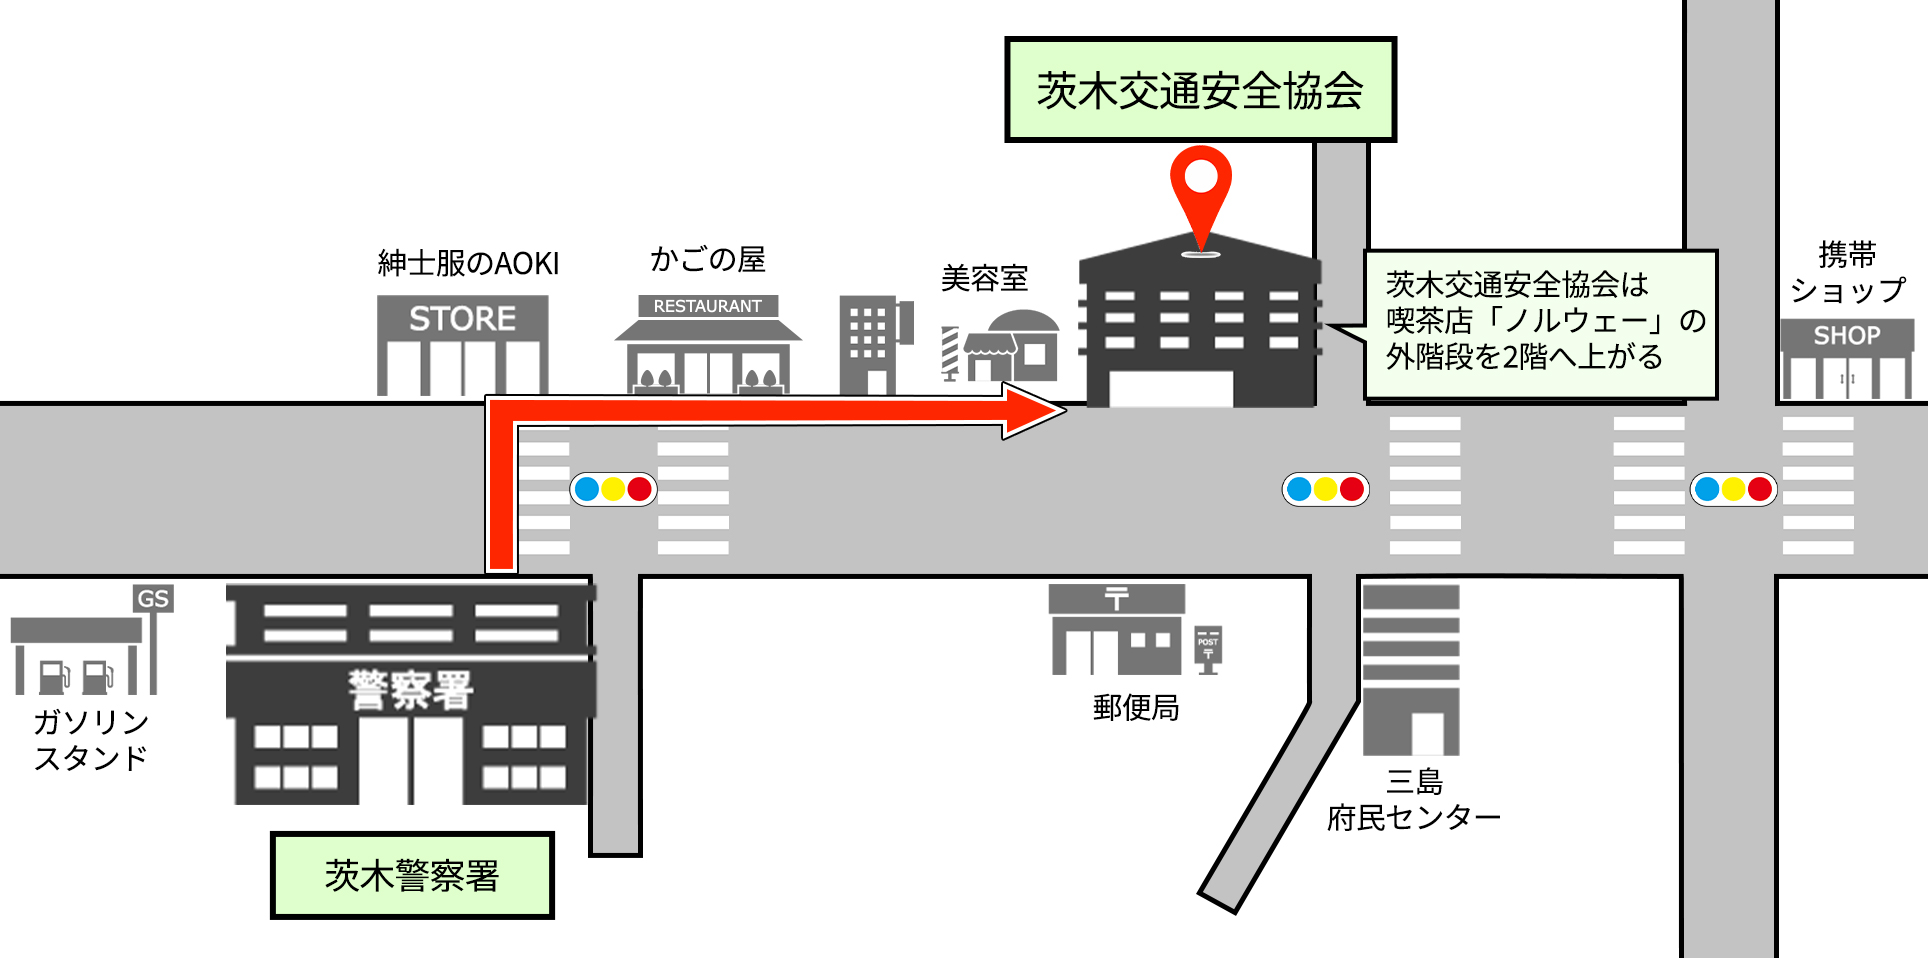 大阪 府 交通 安全 協会